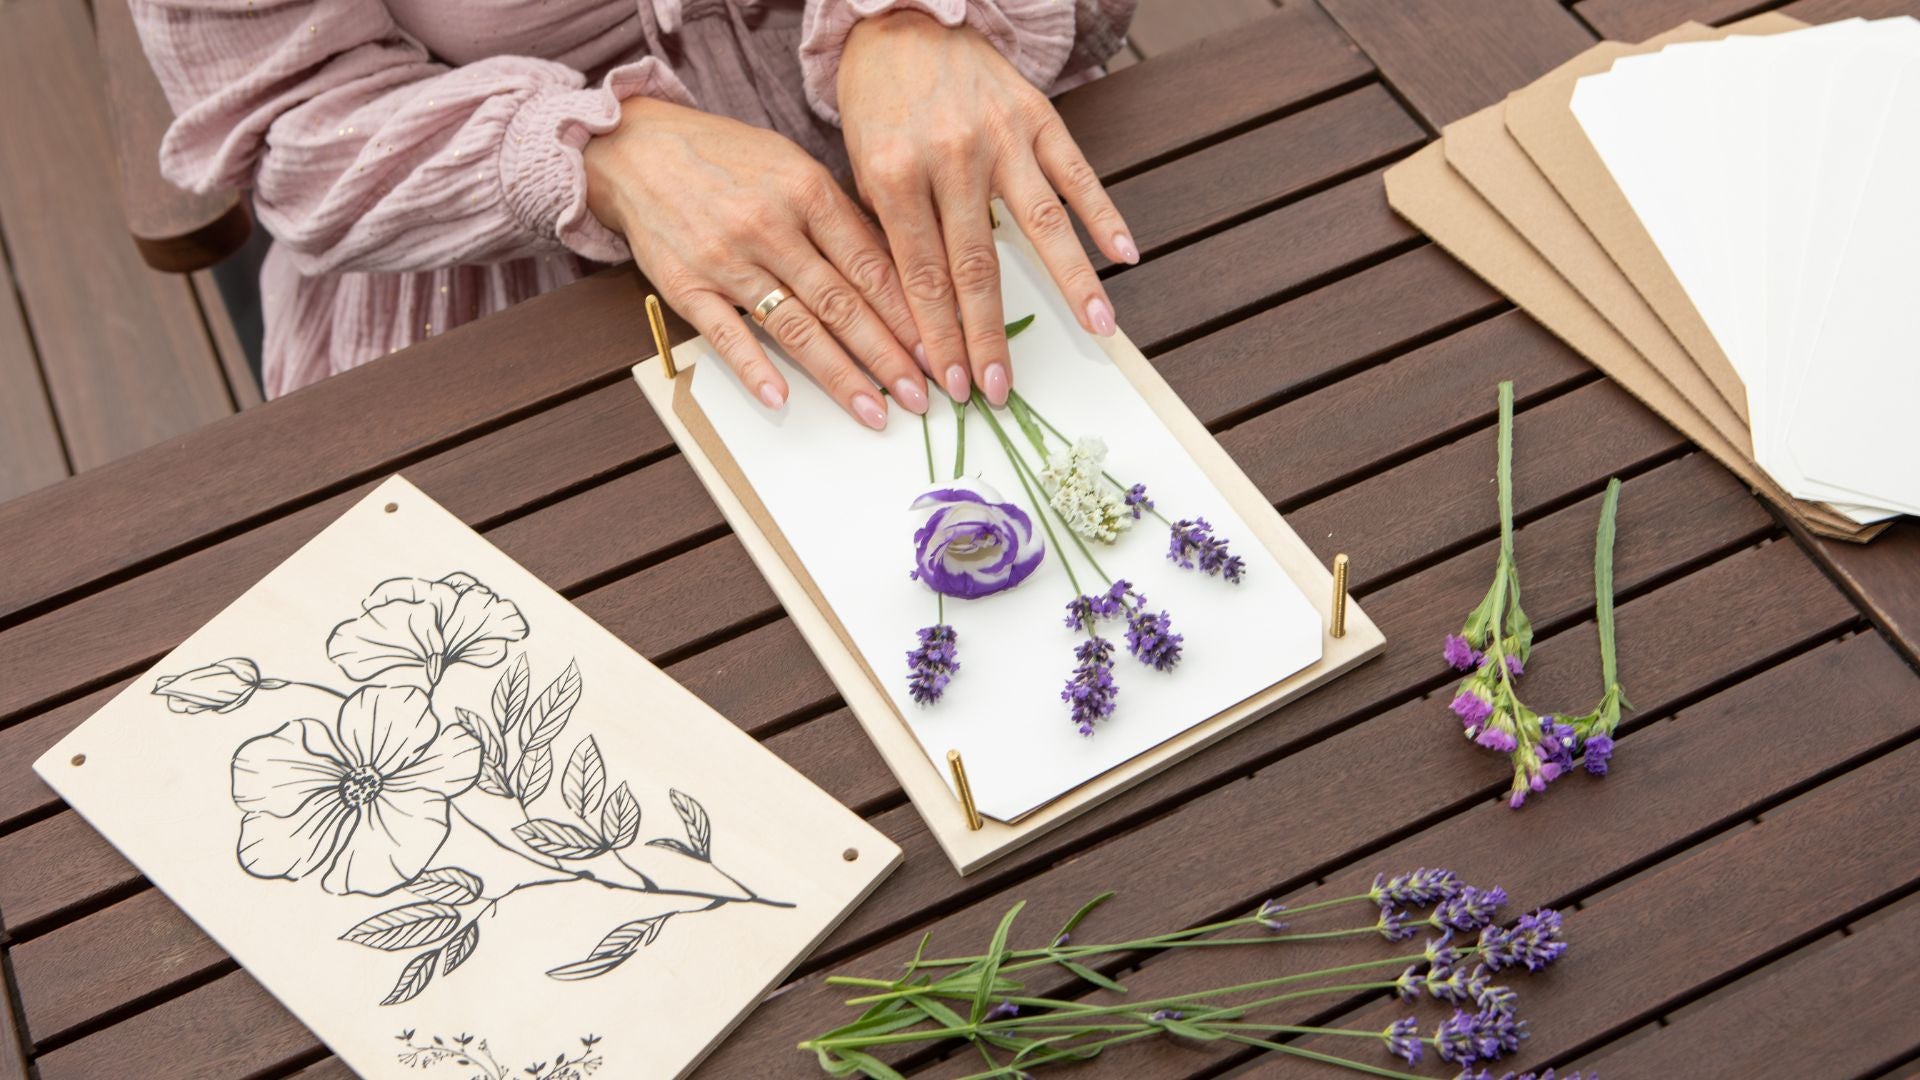 Flower Press Paper for your flower pressing kit – Berstuk Store